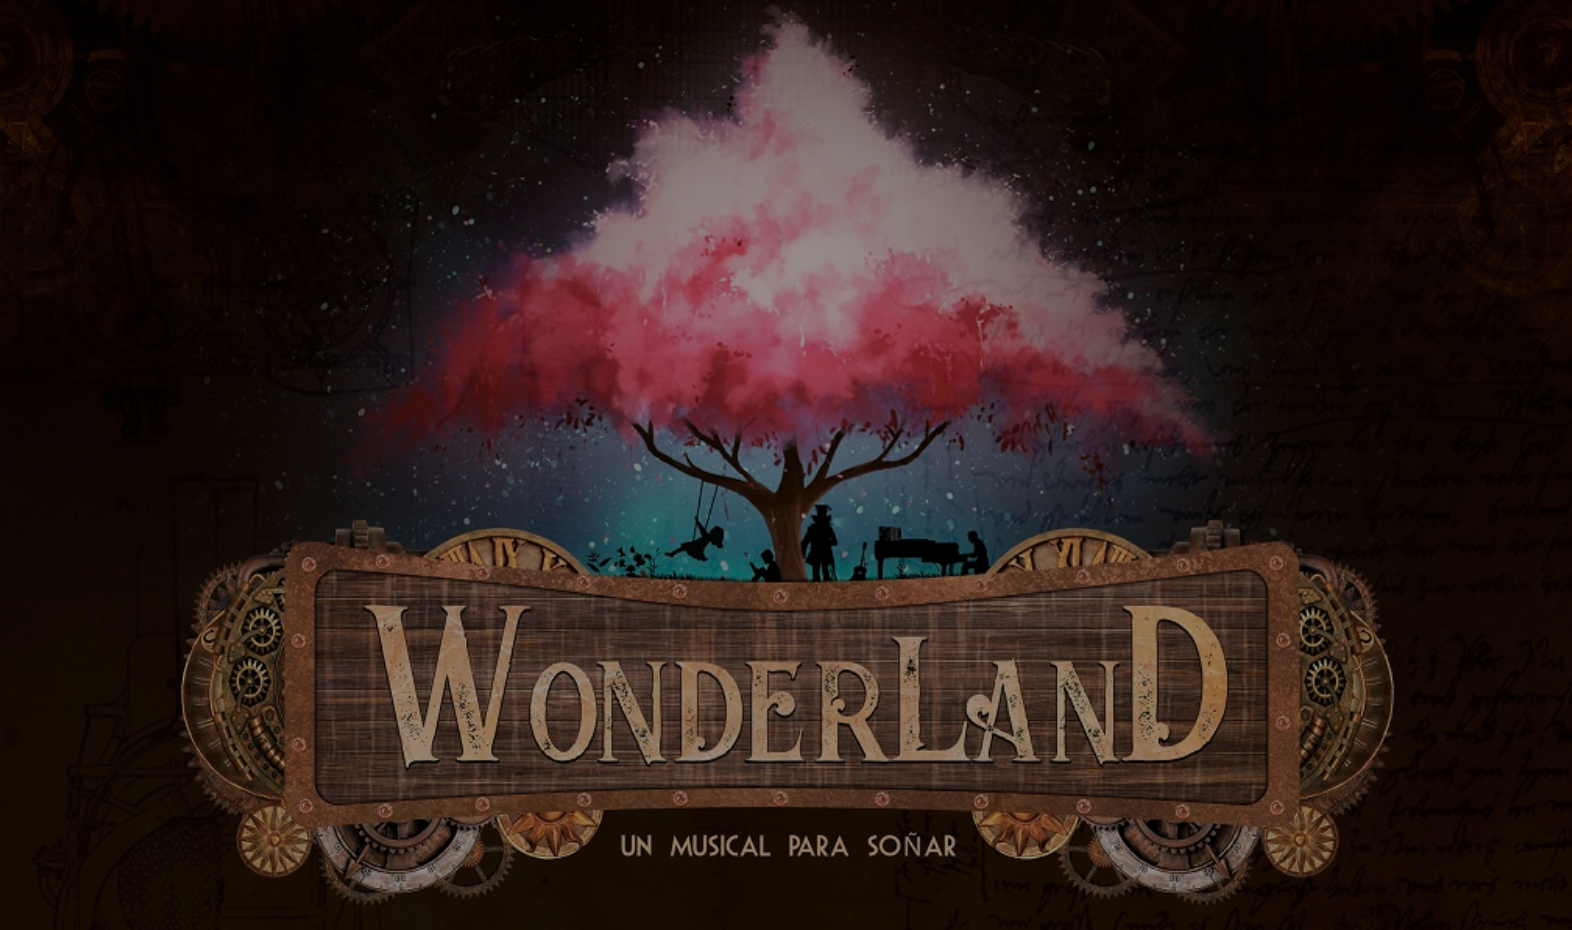 El musical 'Wonderland' estaba previsto a principios de enero en el Teatro Villamarta.